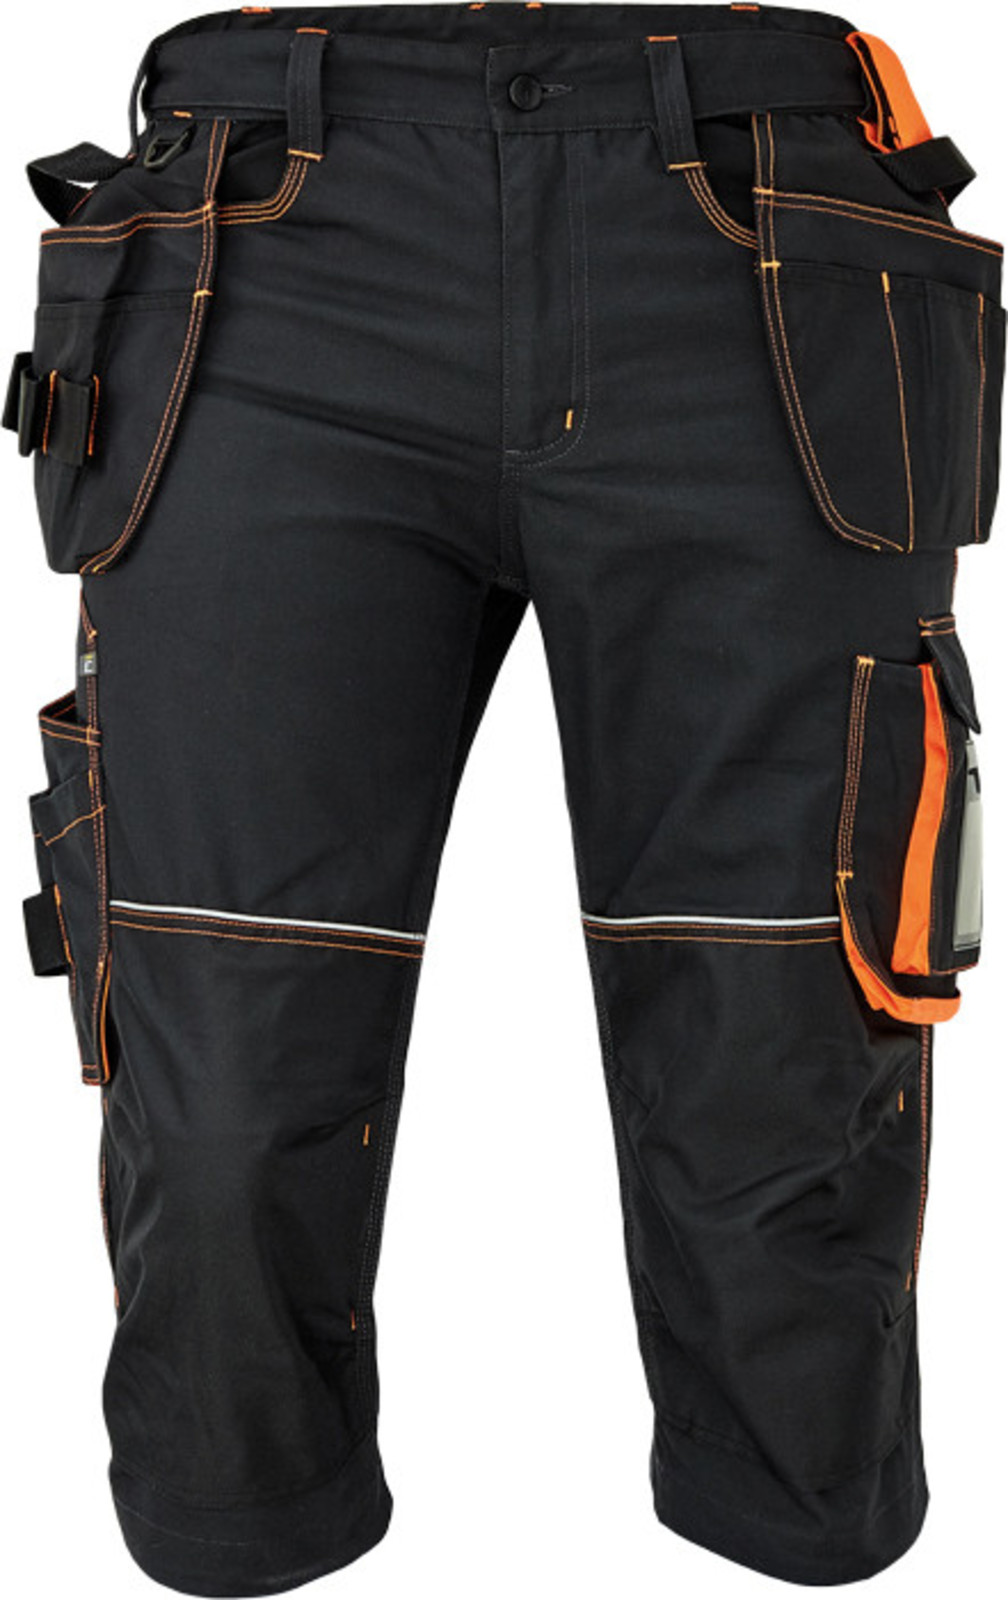 Pánske pracovné 3/4 nohavice Cerva Knoxfield 320 - veľkosť: 48, farba: antracit/oranžová